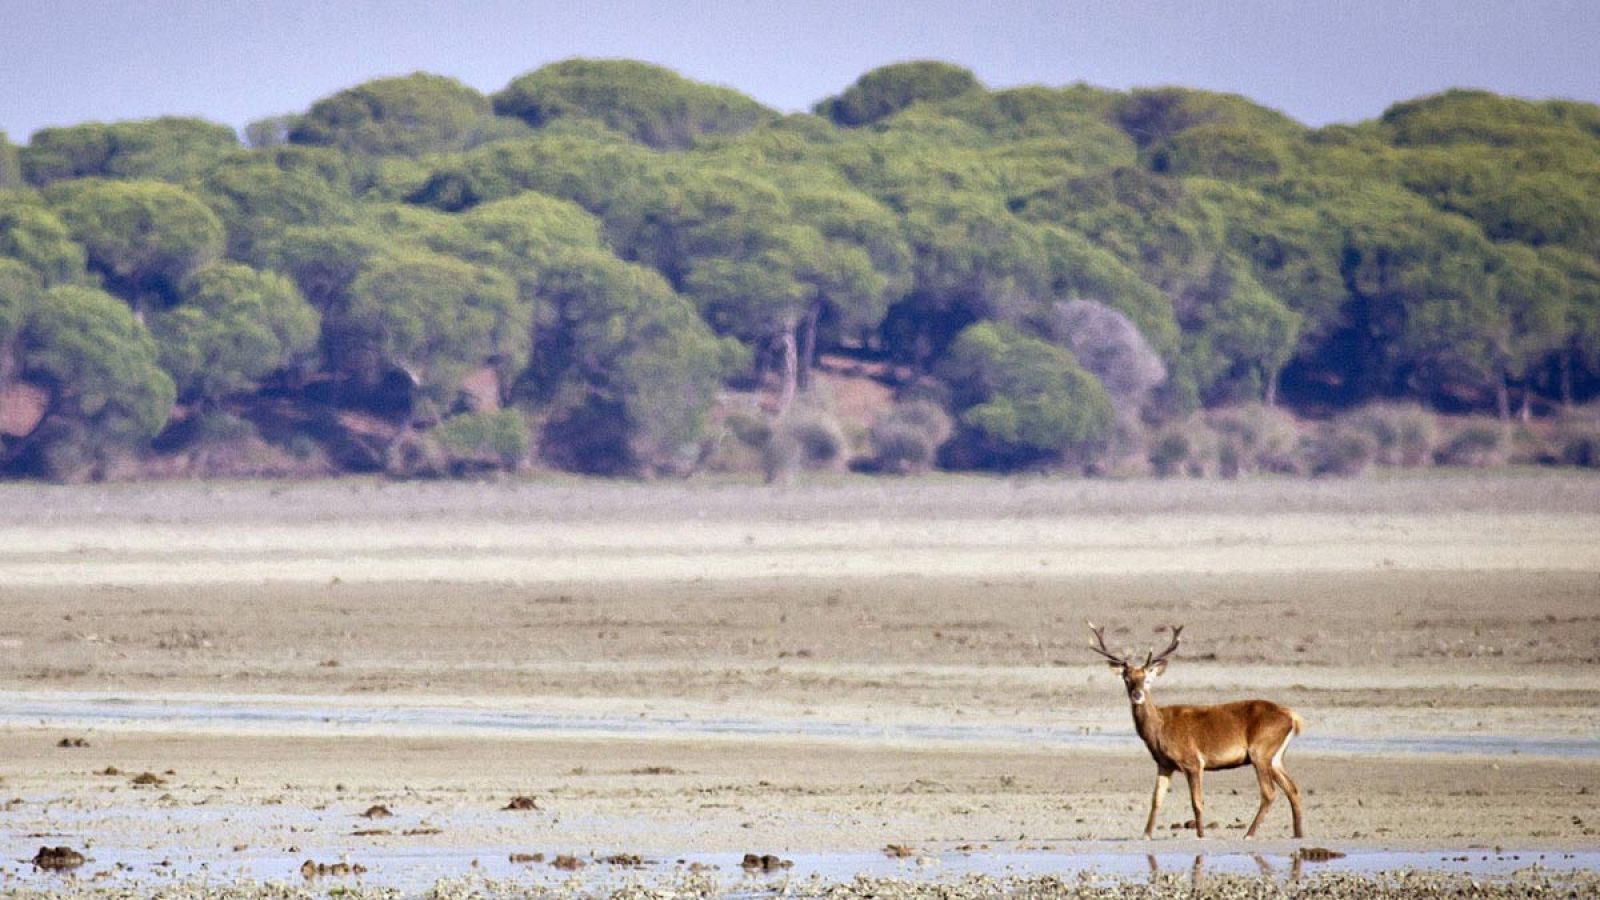 Un ciervo pasea por la marismas del Parque Nacional de Doñana (Huelva), Patrimonio de la Humanidad y Reserva de la Biosfera.